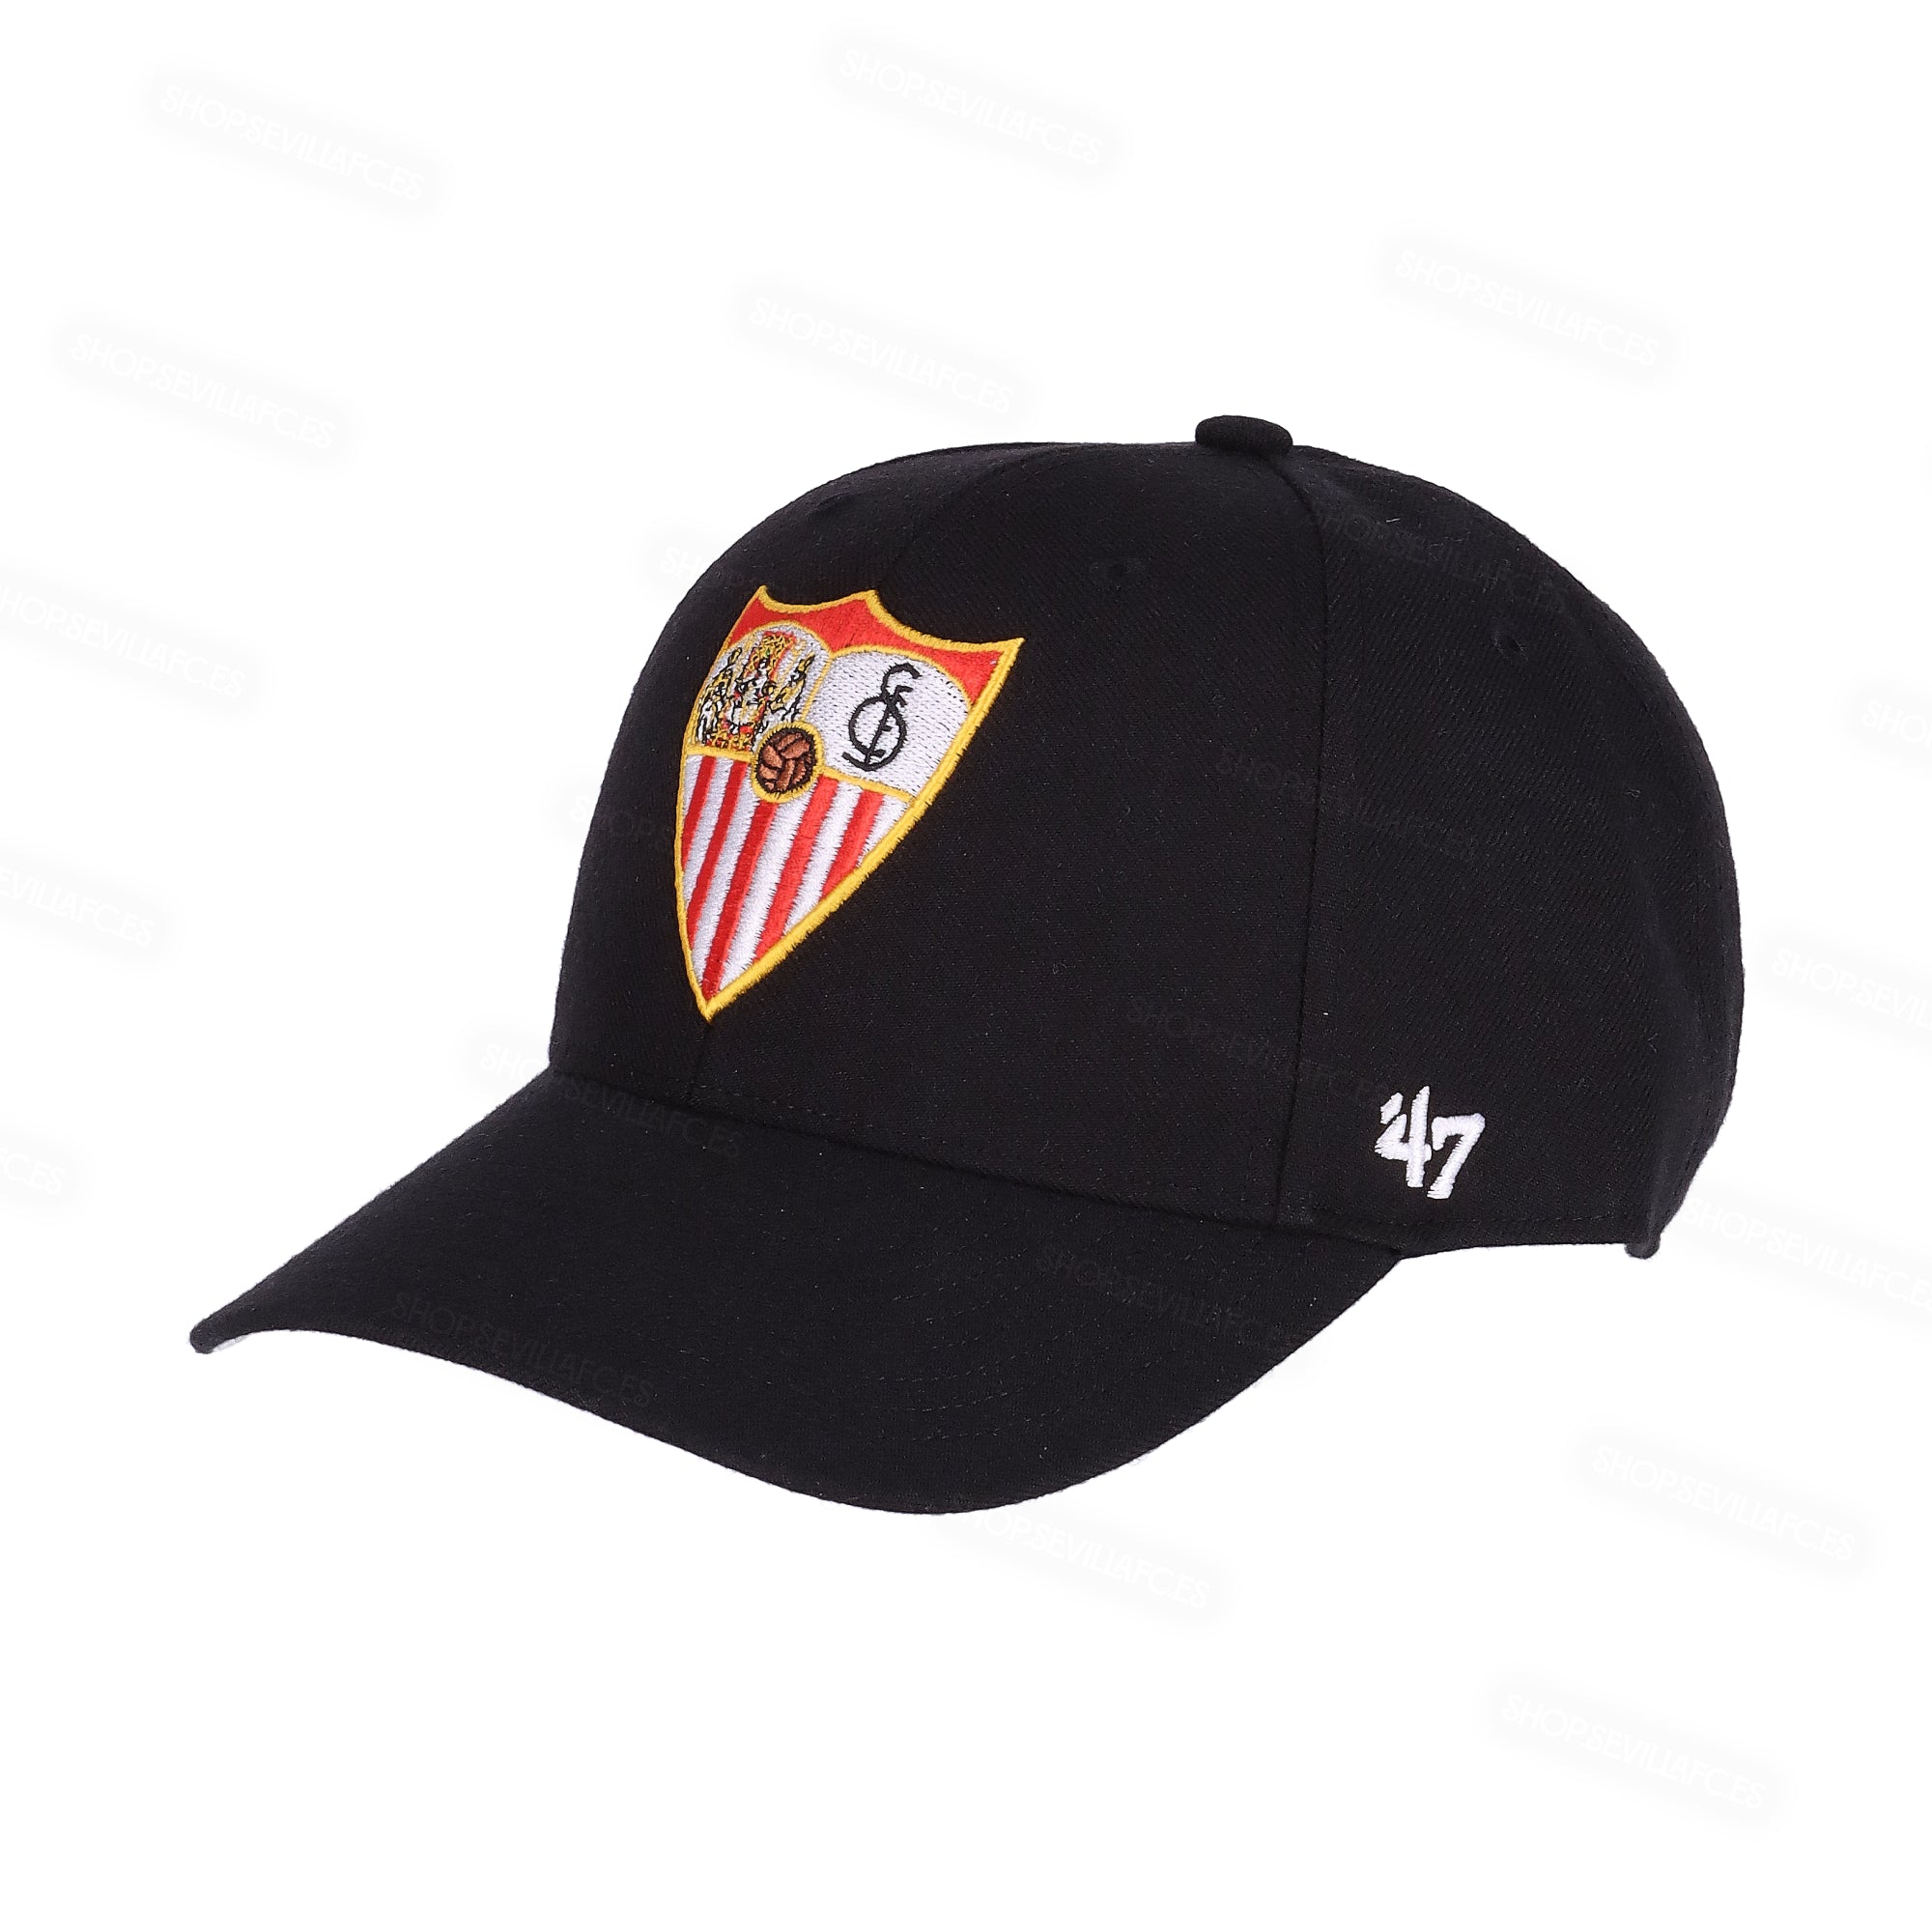 Black cap with velcro